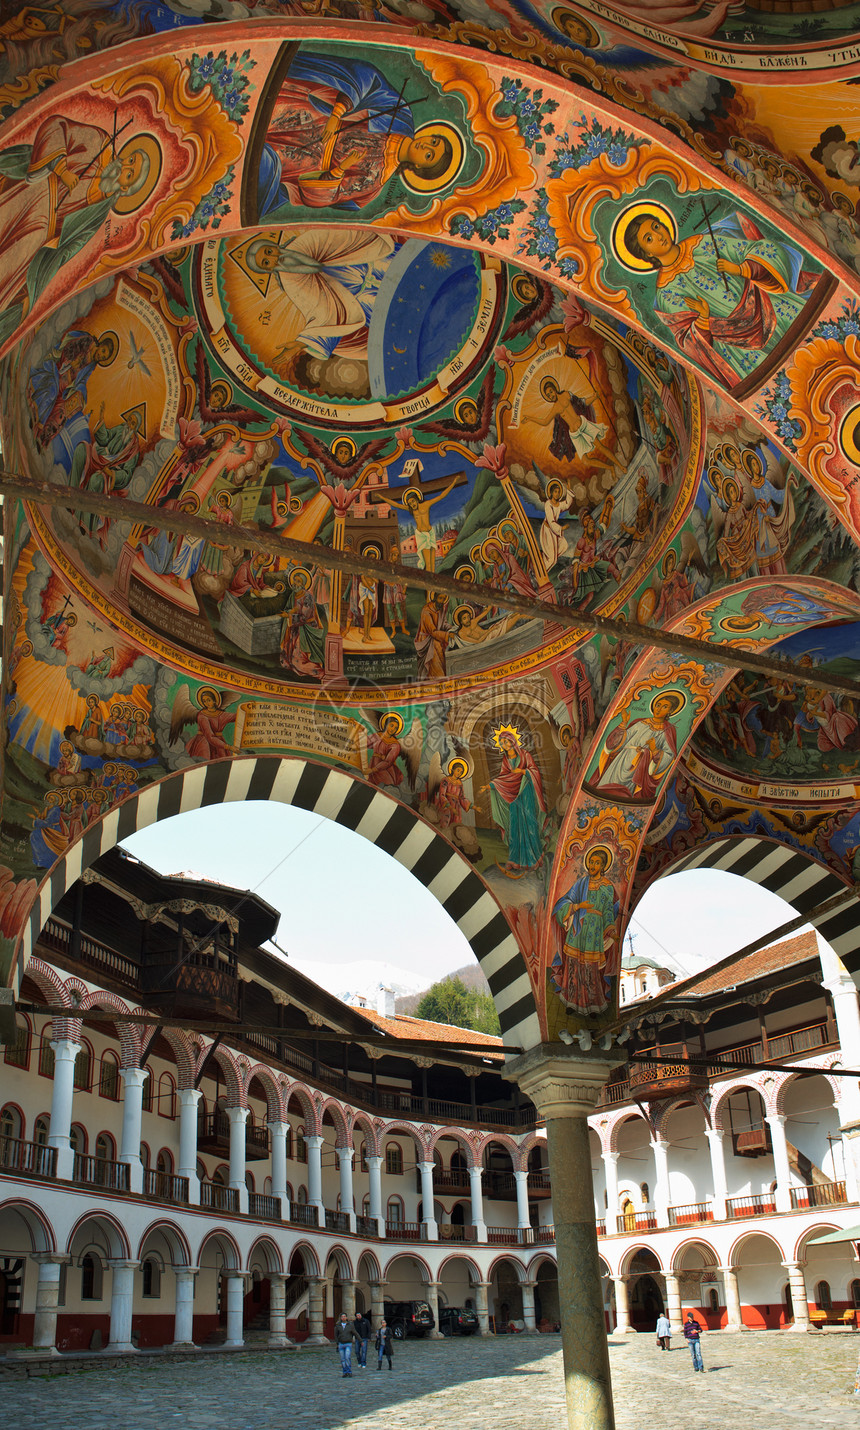 里拉修道院 壁画绘画图片